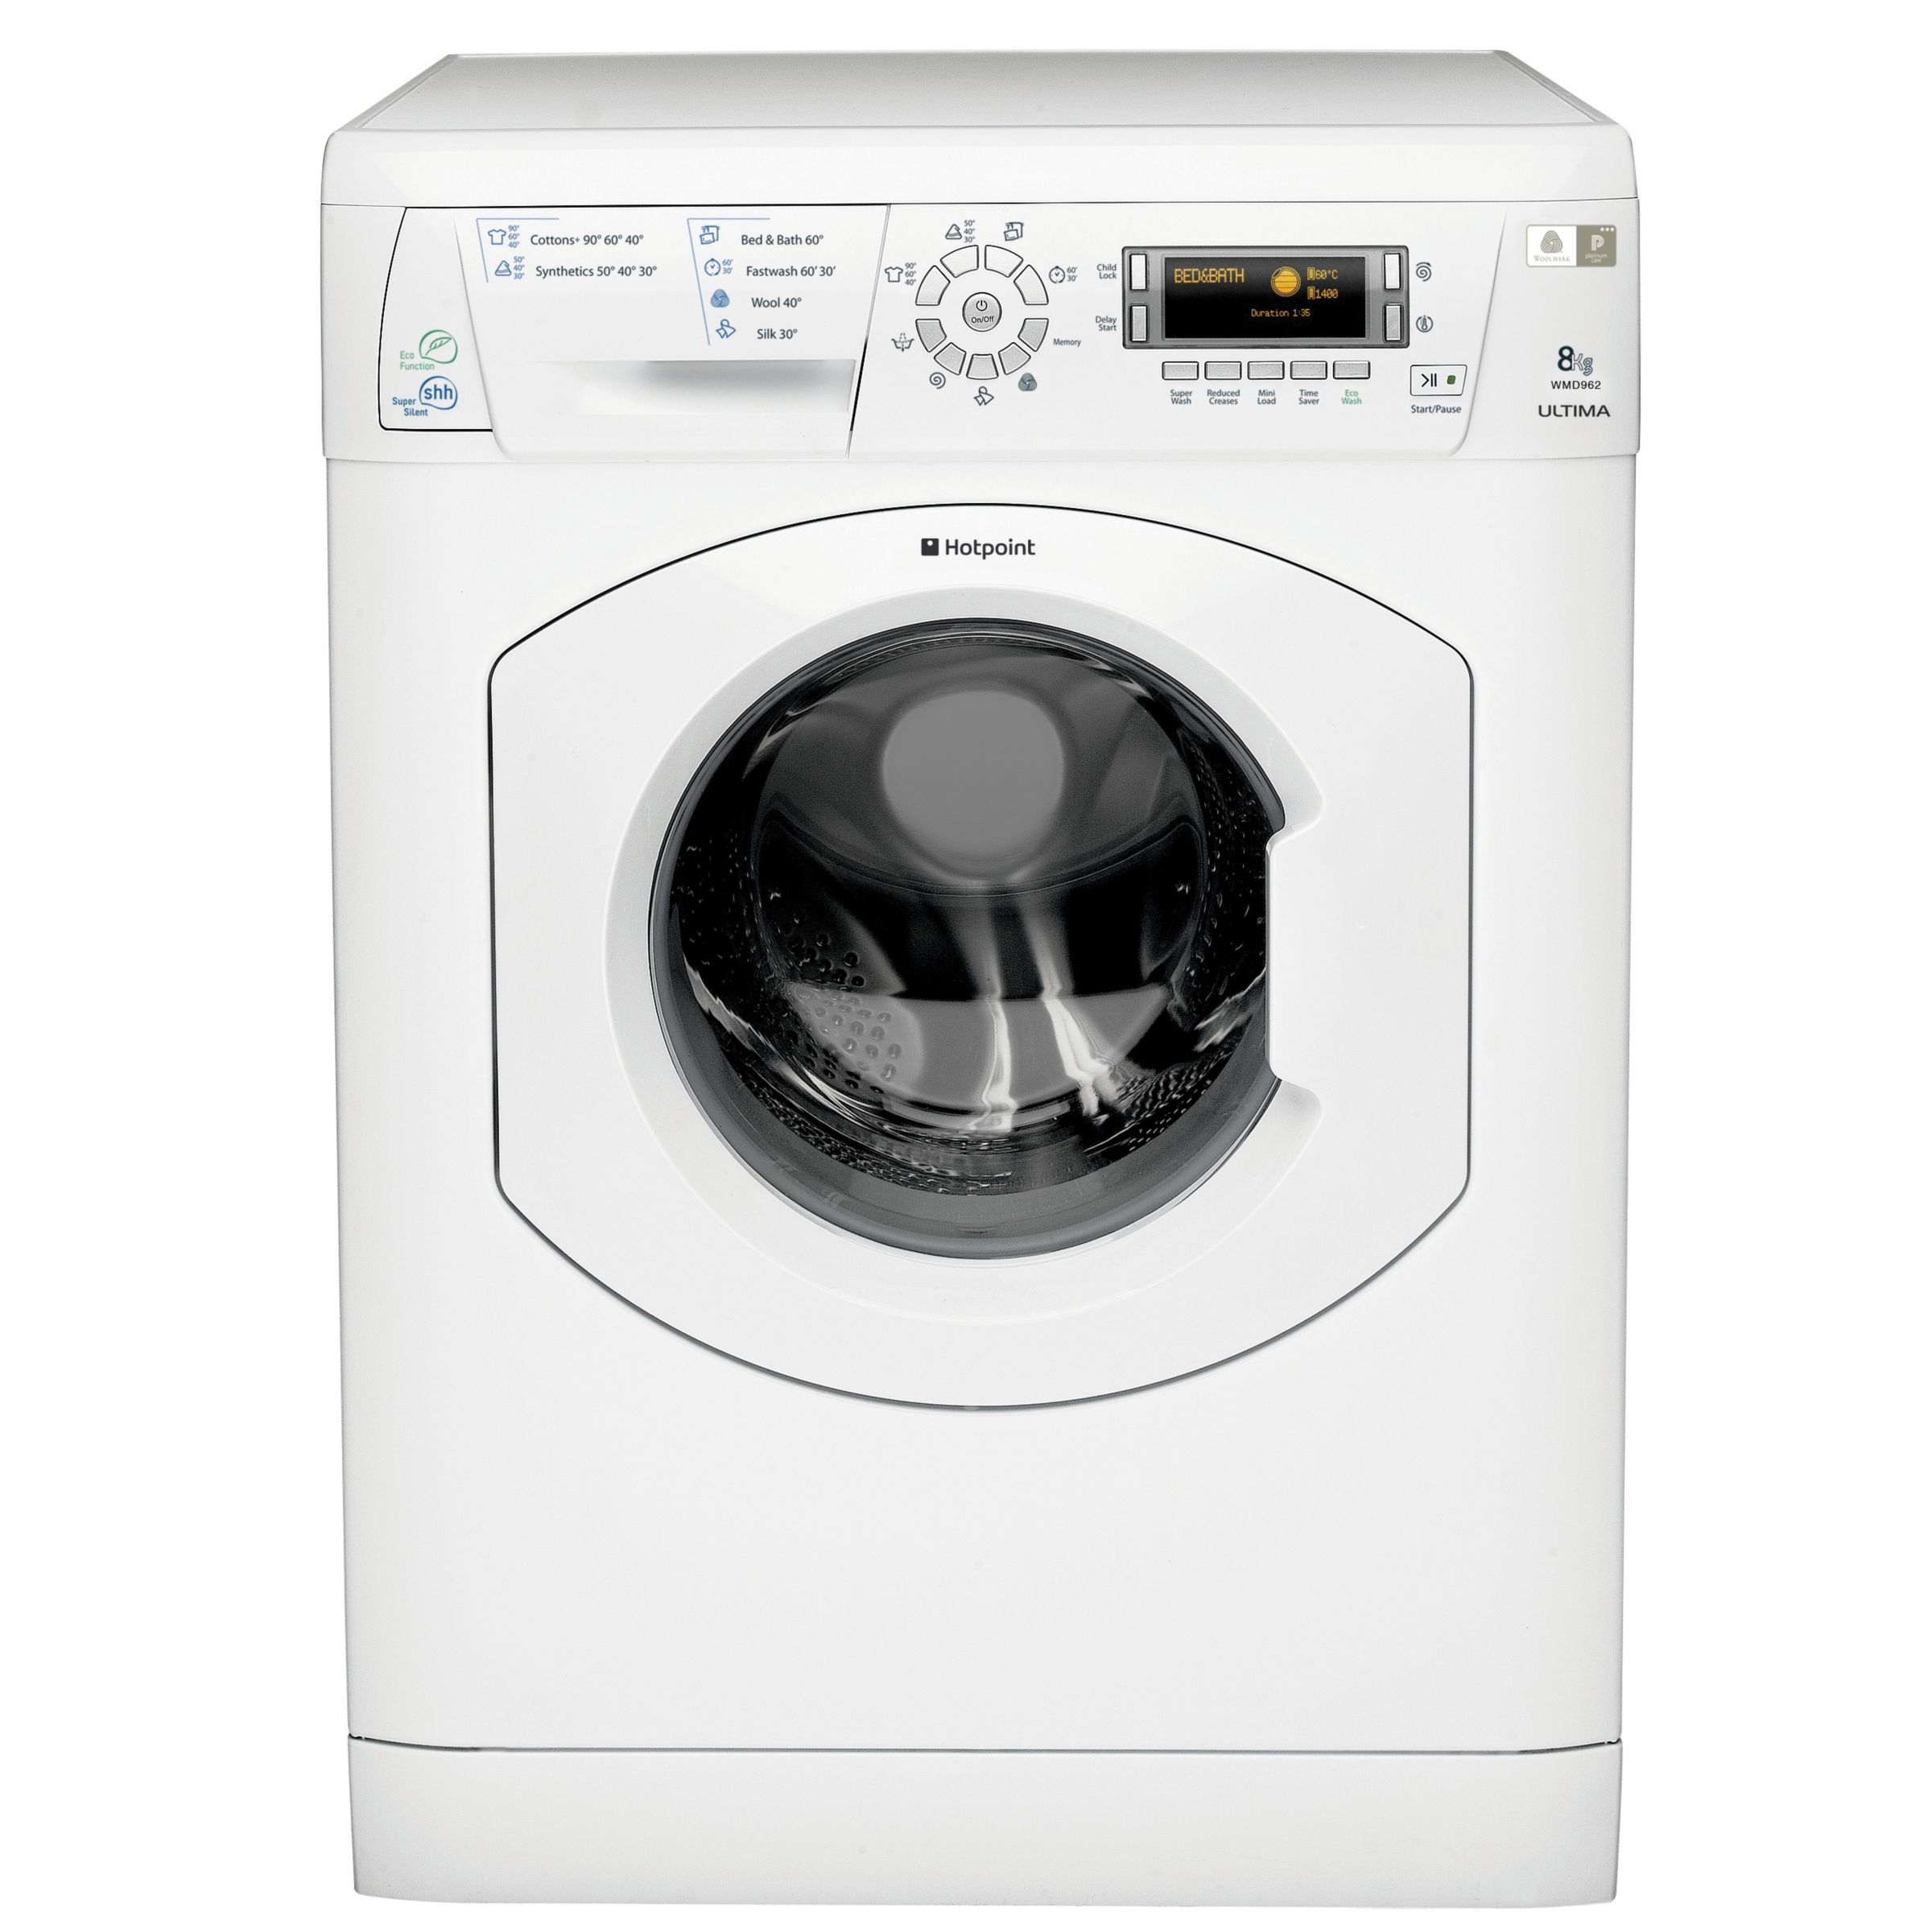 Hotpoint WMD962P Washing Machine, White at John Lewis